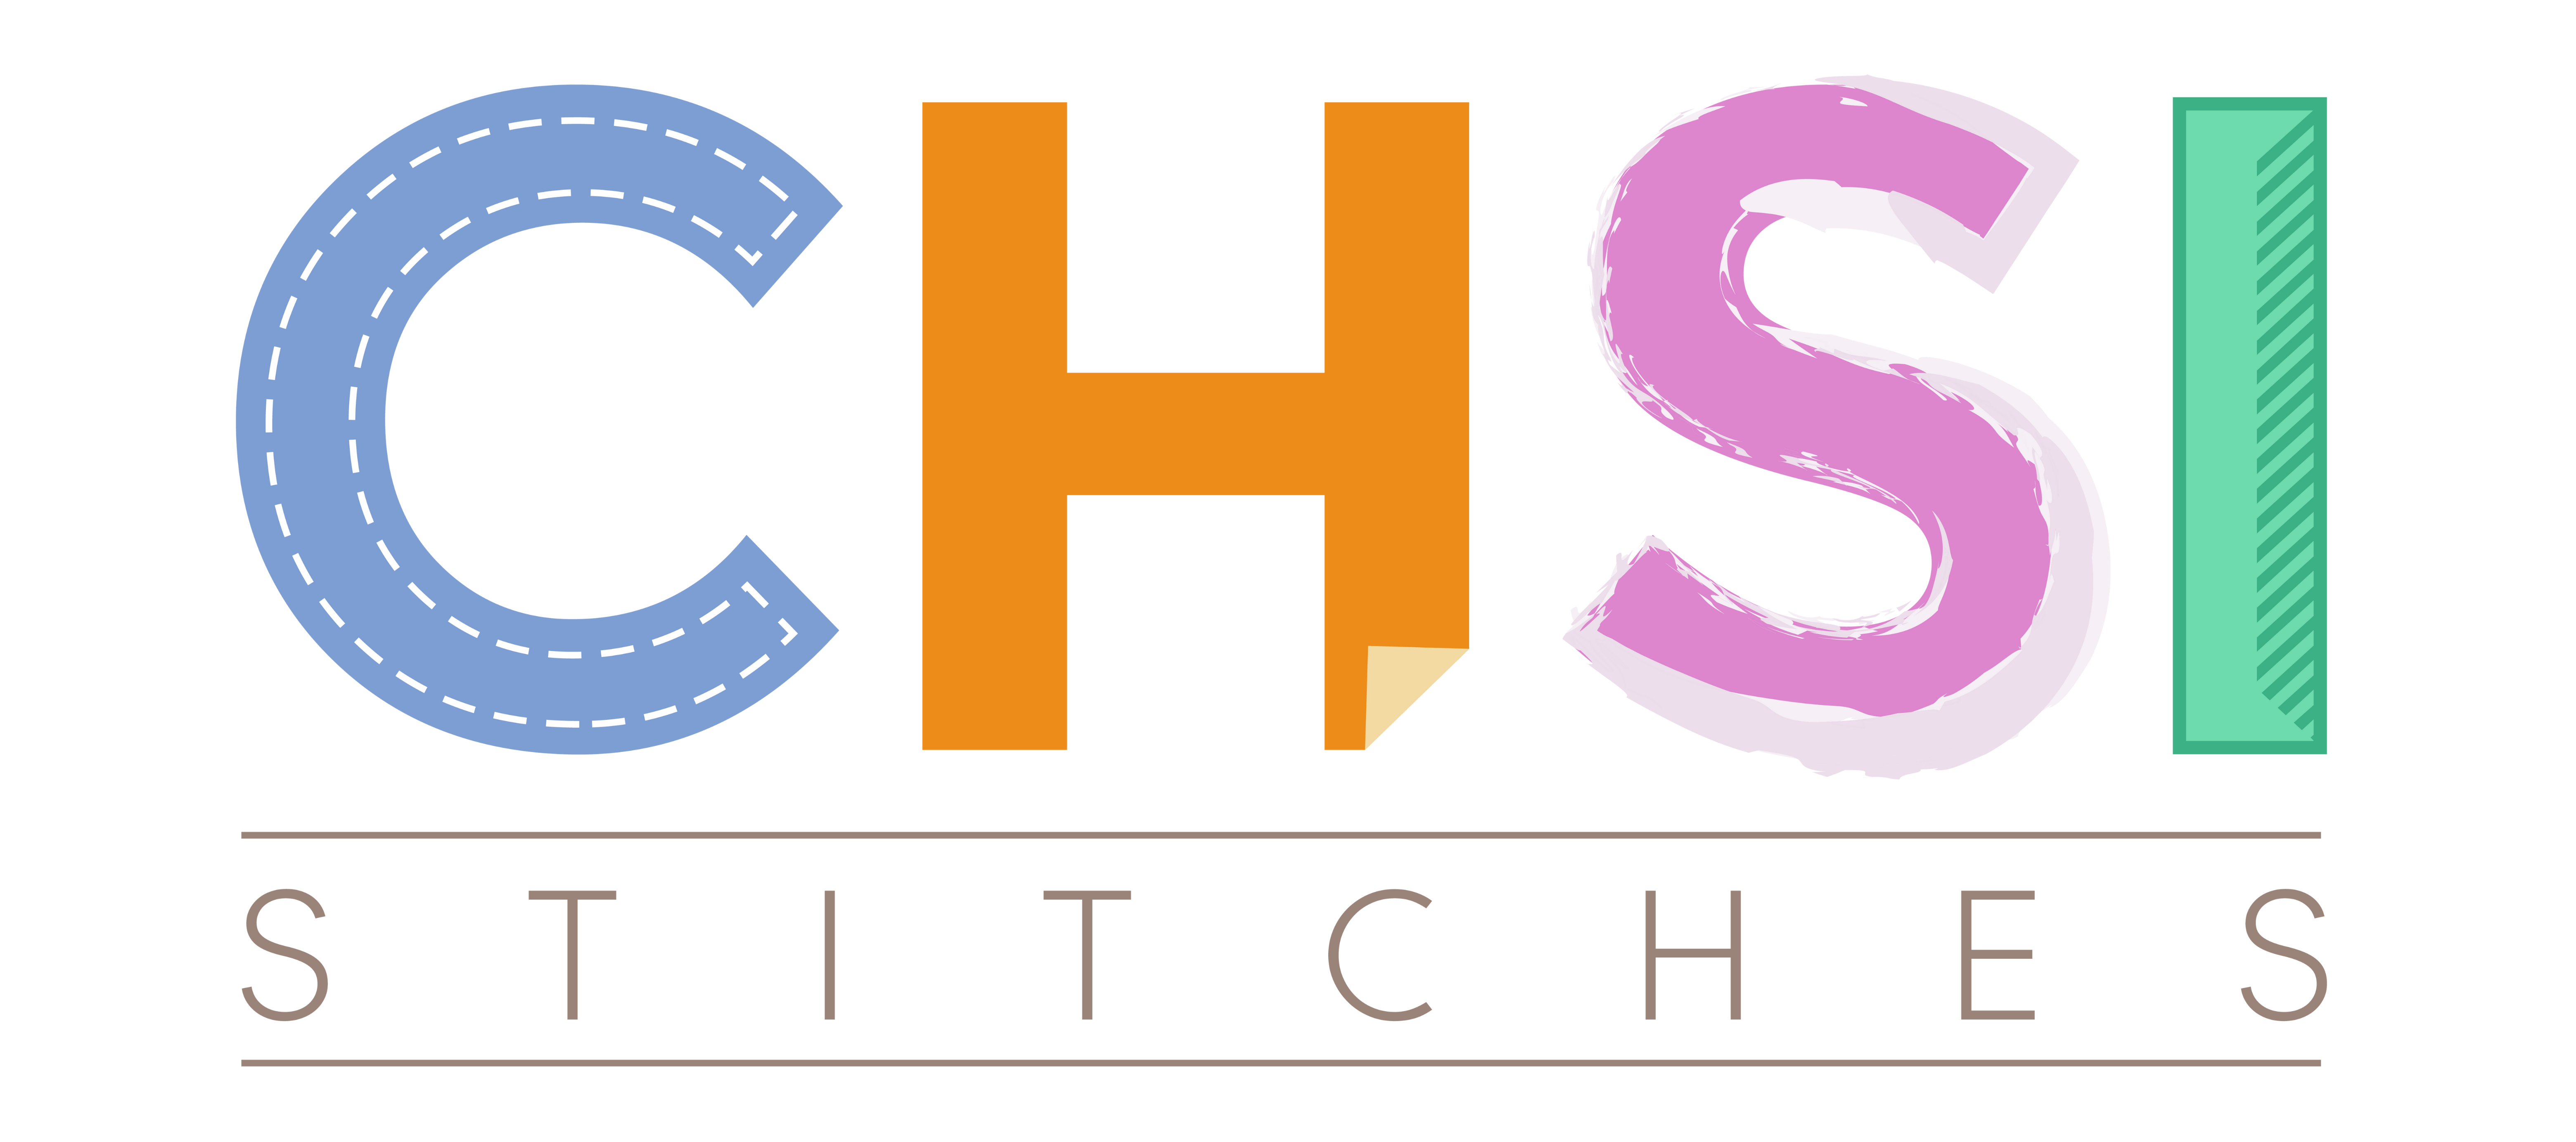 CHSI Stitches